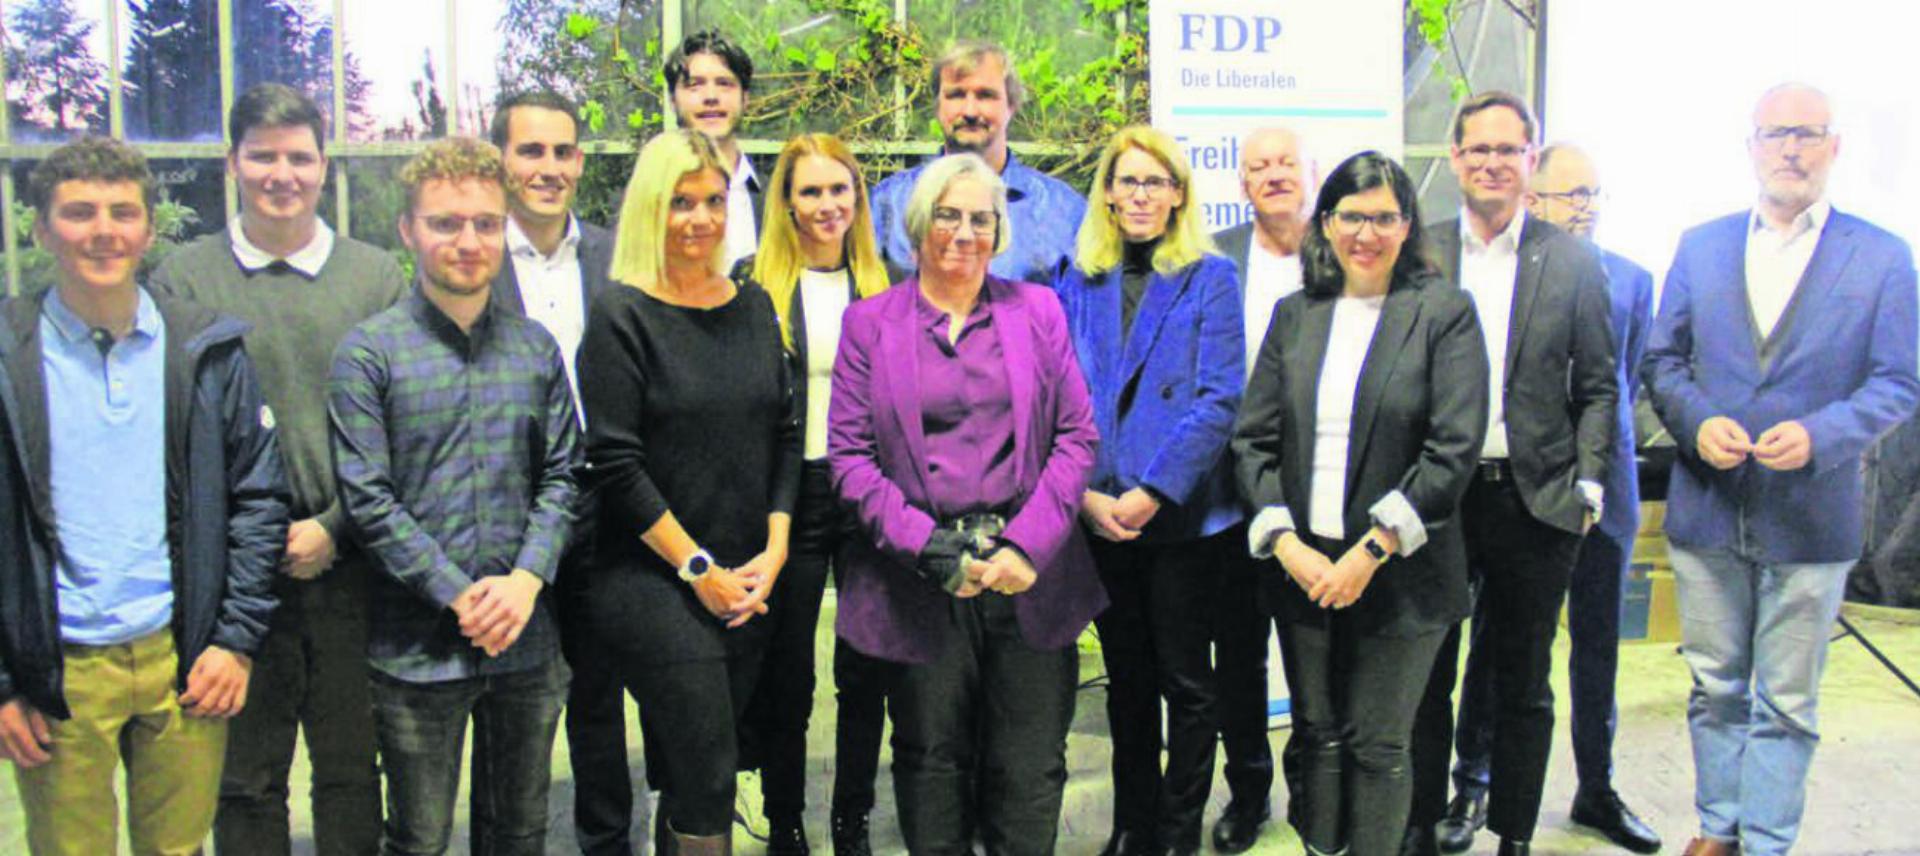 16 Kandidaten und Kandidatinnen treten im Herbst für die FDP Bezirk Bremgarten an. Darunter auch fünf Vertreter der Jungfreisinnigen. Bilder: pf